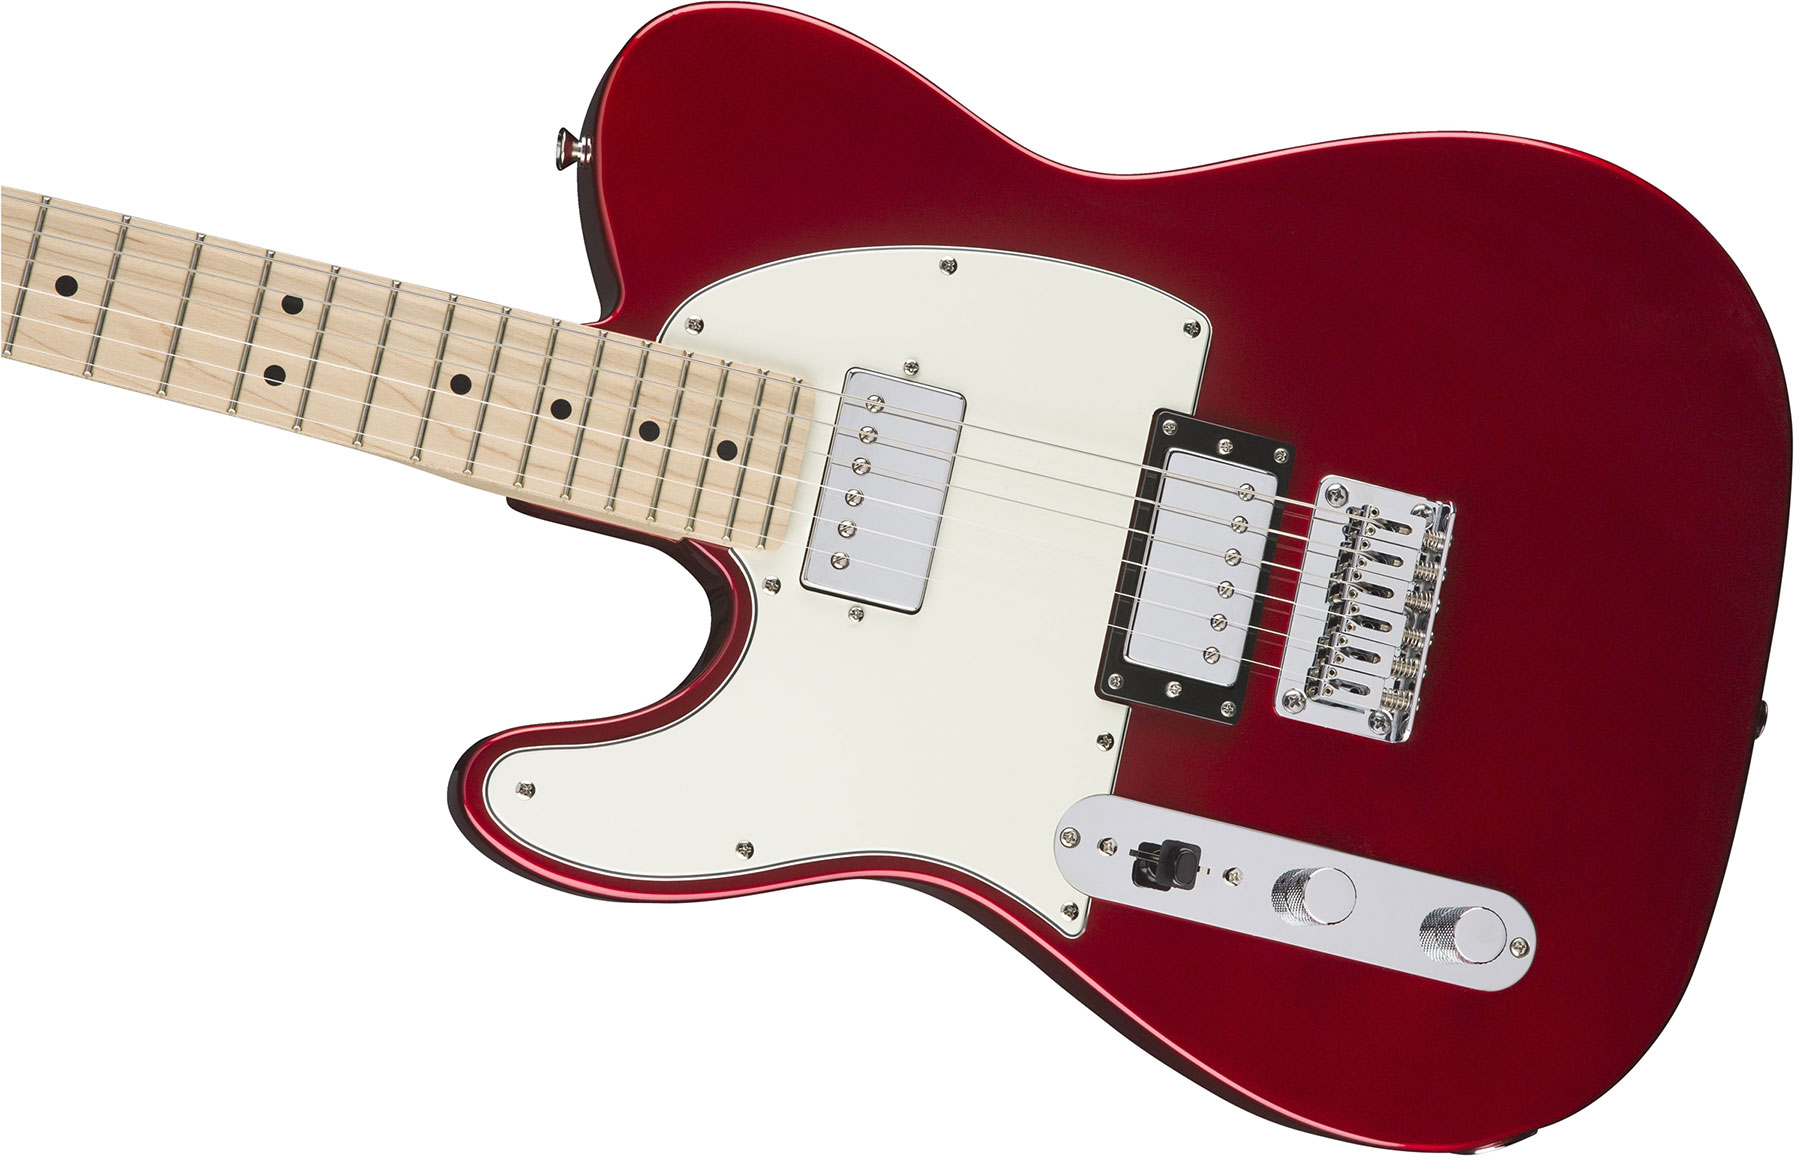 Squier Tele Contemporary Hh Lh Gaucher Mn - Dark Metallic Red - Linkshandige elektrische gitaar - Variation 2